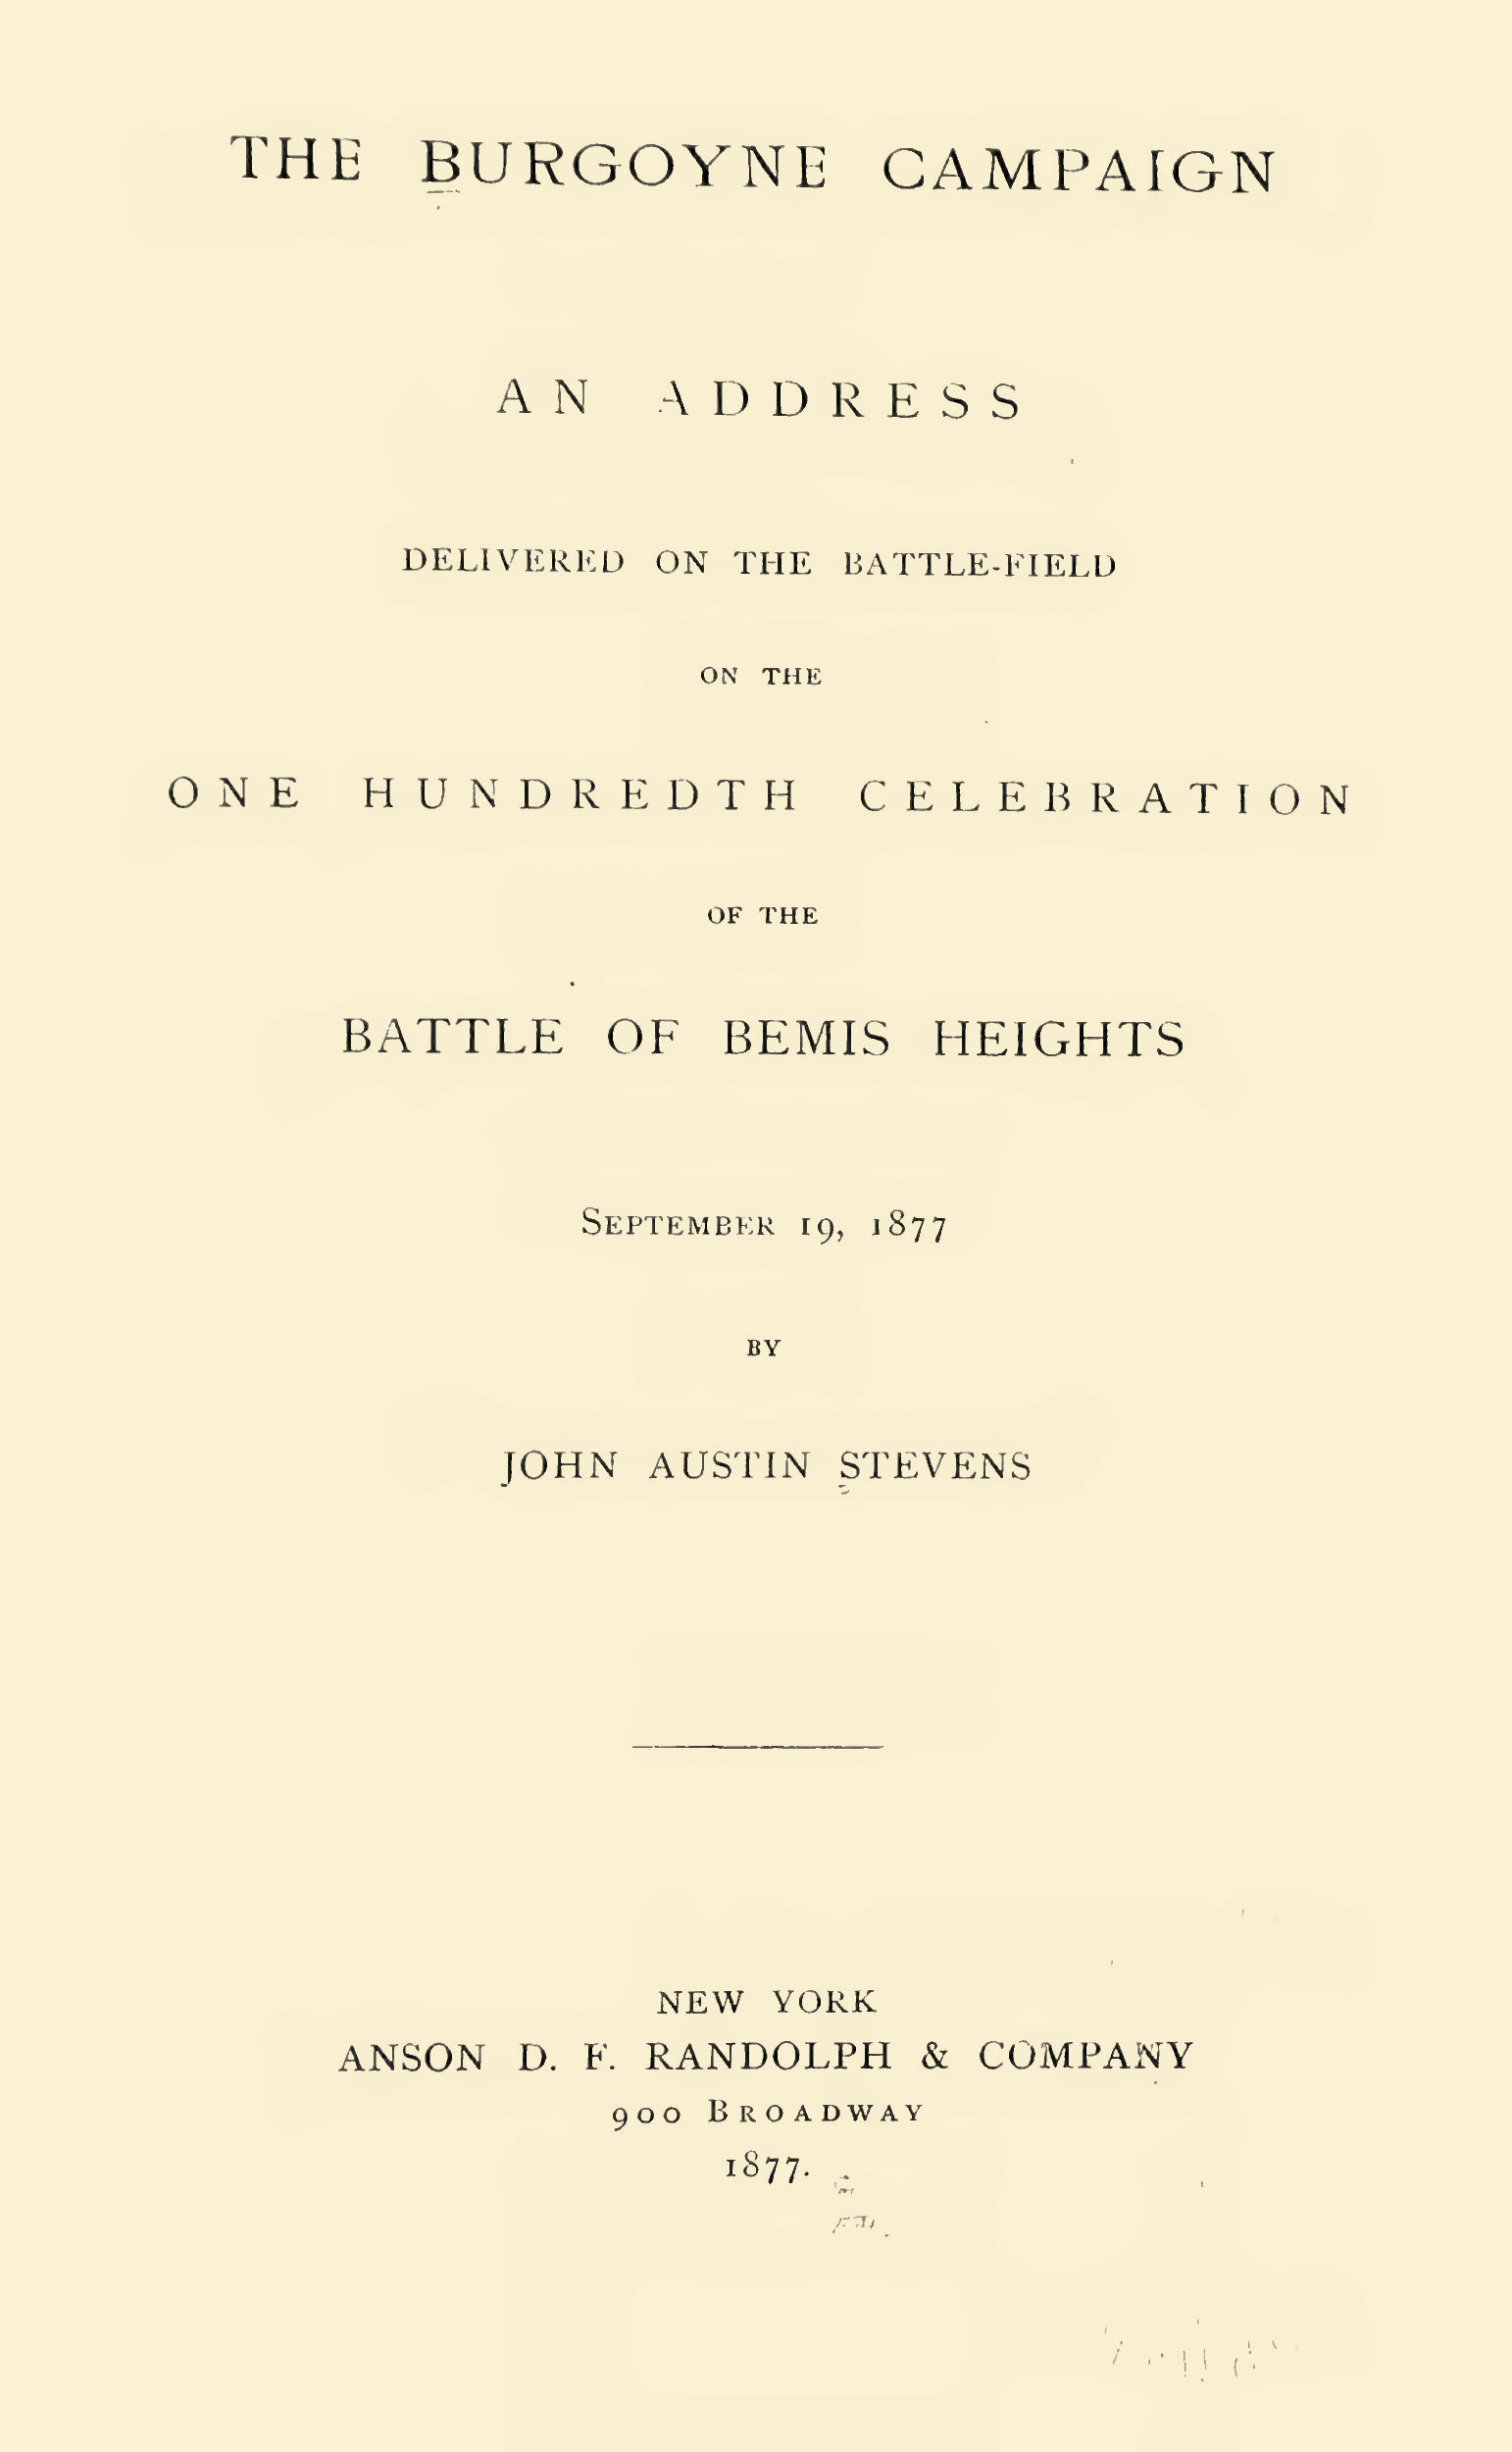 Stevens---Centennial-Celebration-Burgoyne-s-Surrender-7.jpg